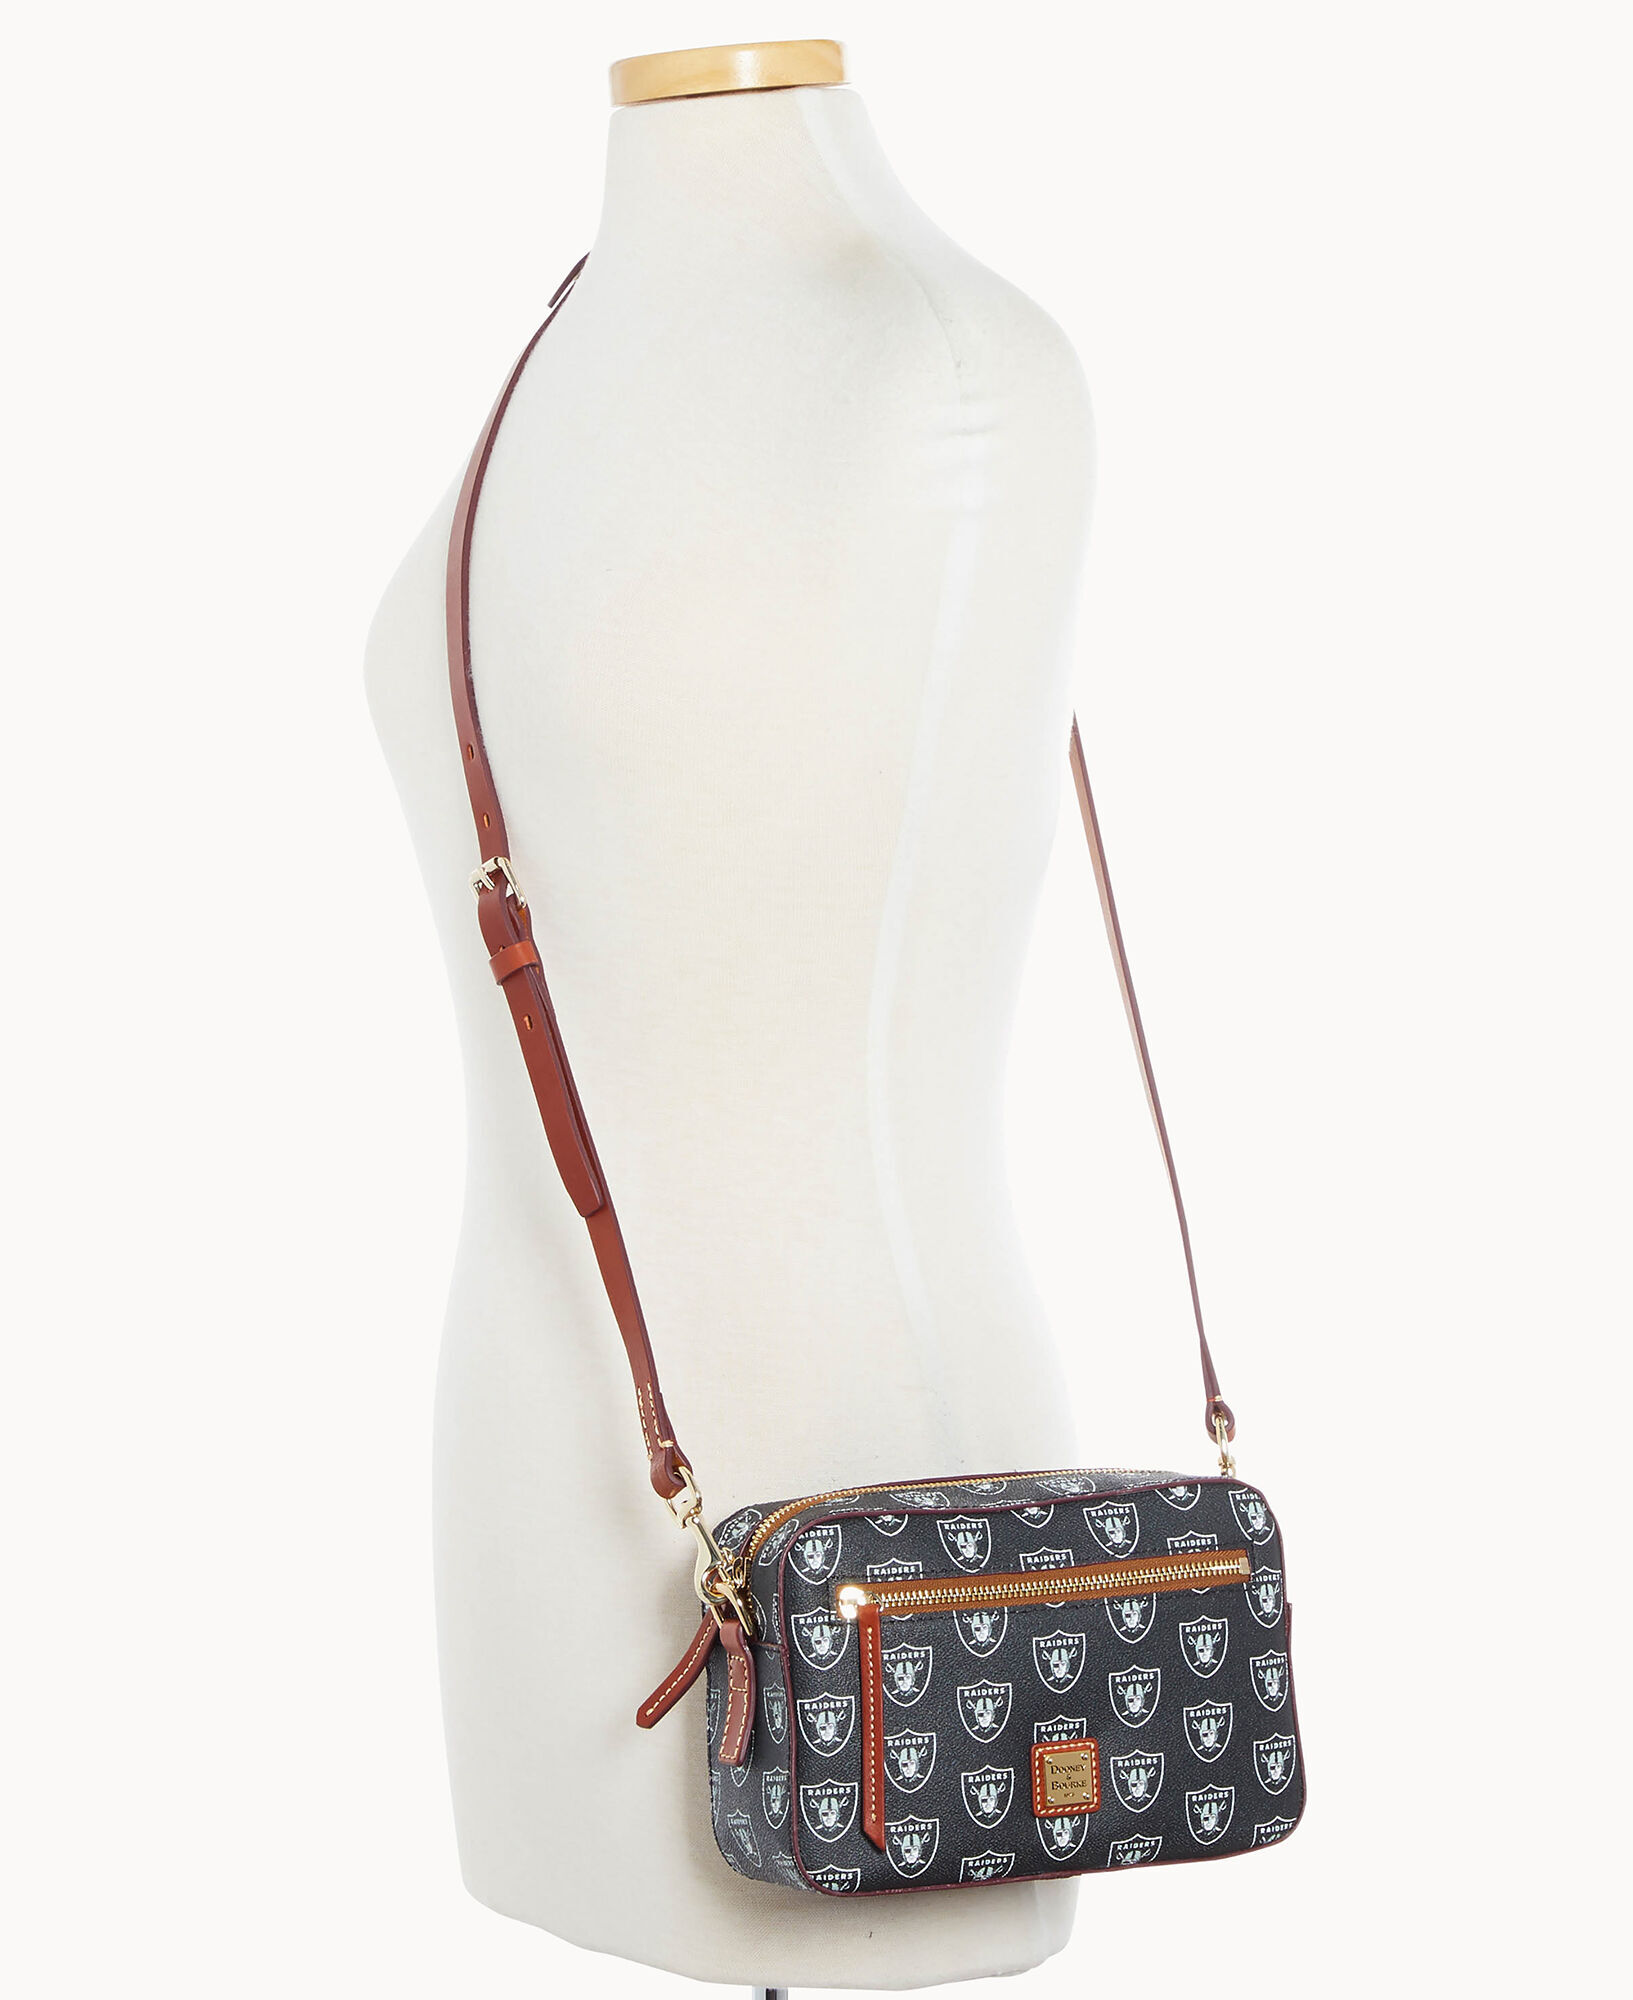 Dooney & Bourke Saffiano Camera Zip Crossbody Shoulder Bag